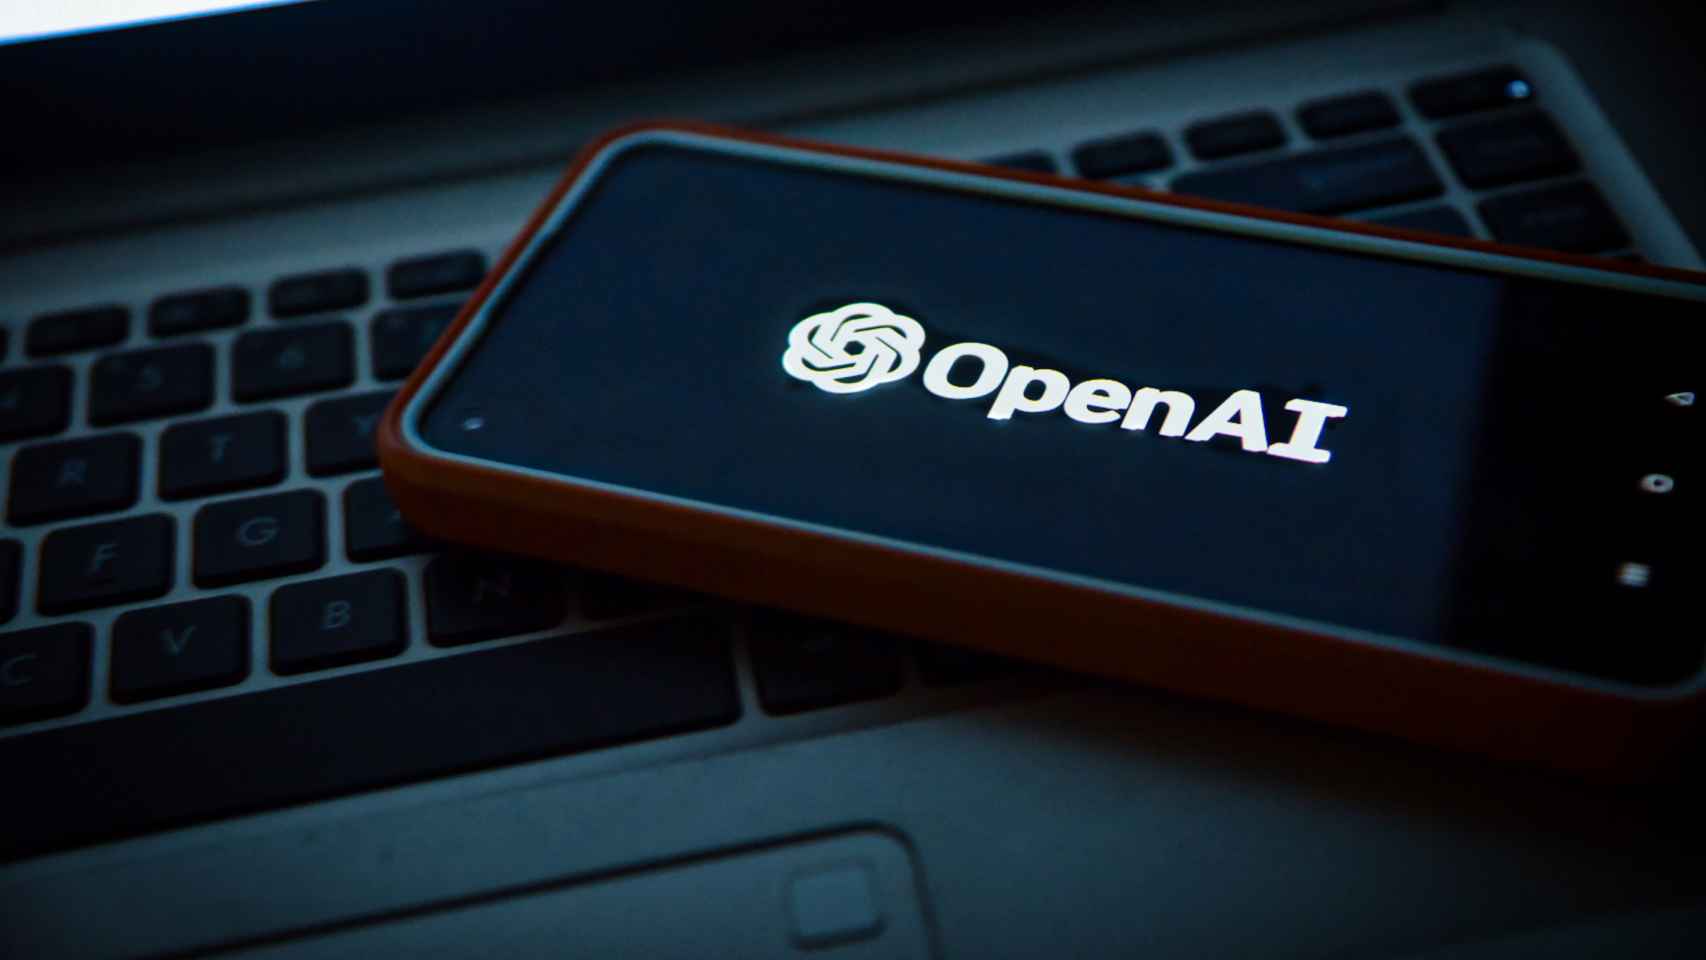 Logotipo de OpenAI, fundada por Sam Altman.